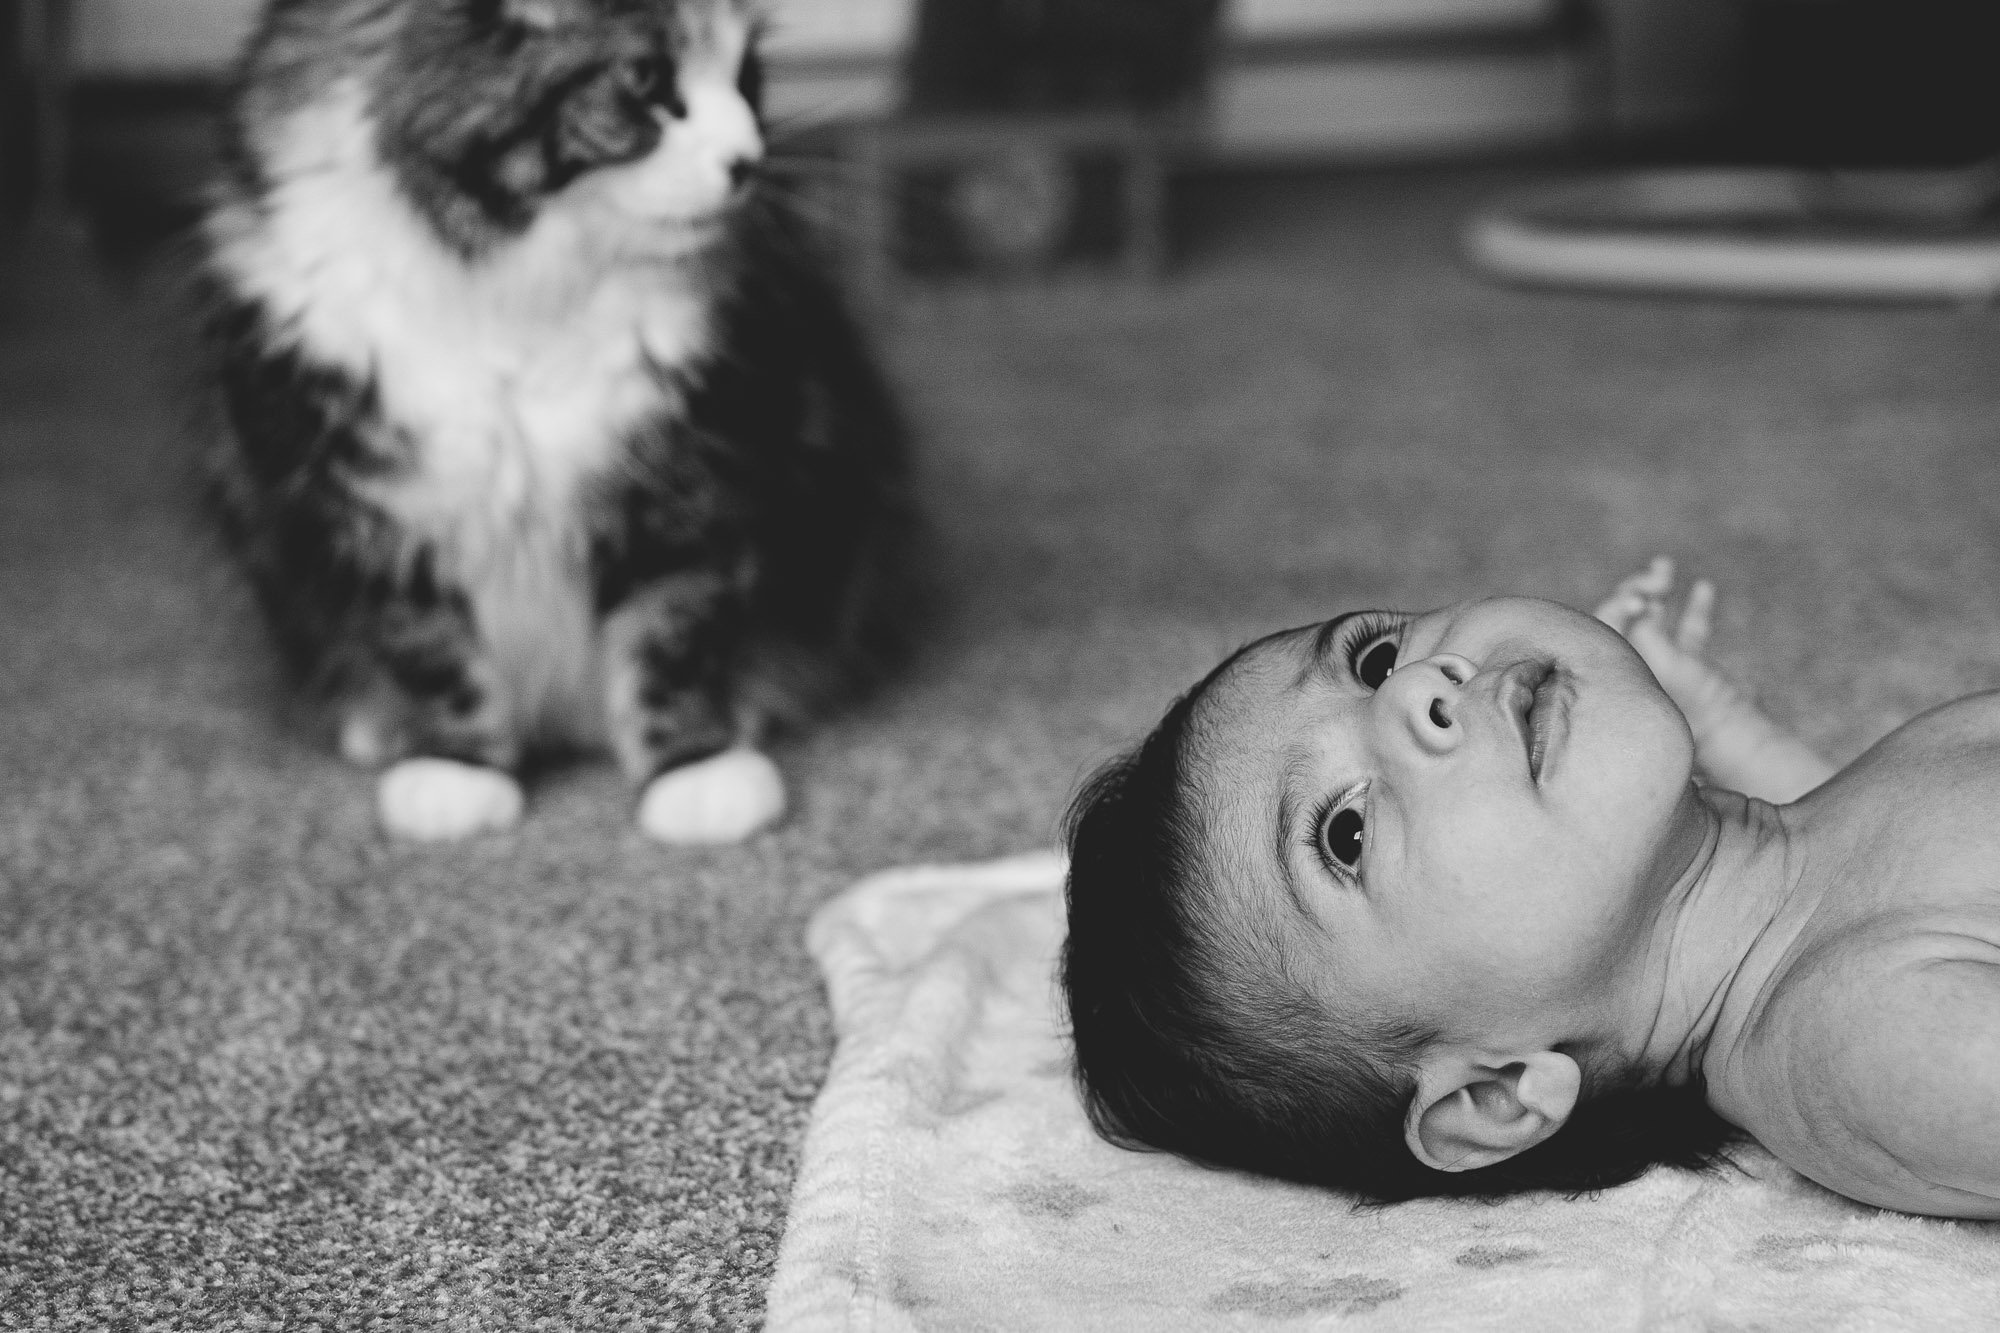 baby-photoshoot-at-home-brighton-hove-black-and-white-newborn-portrait-cat.jpg